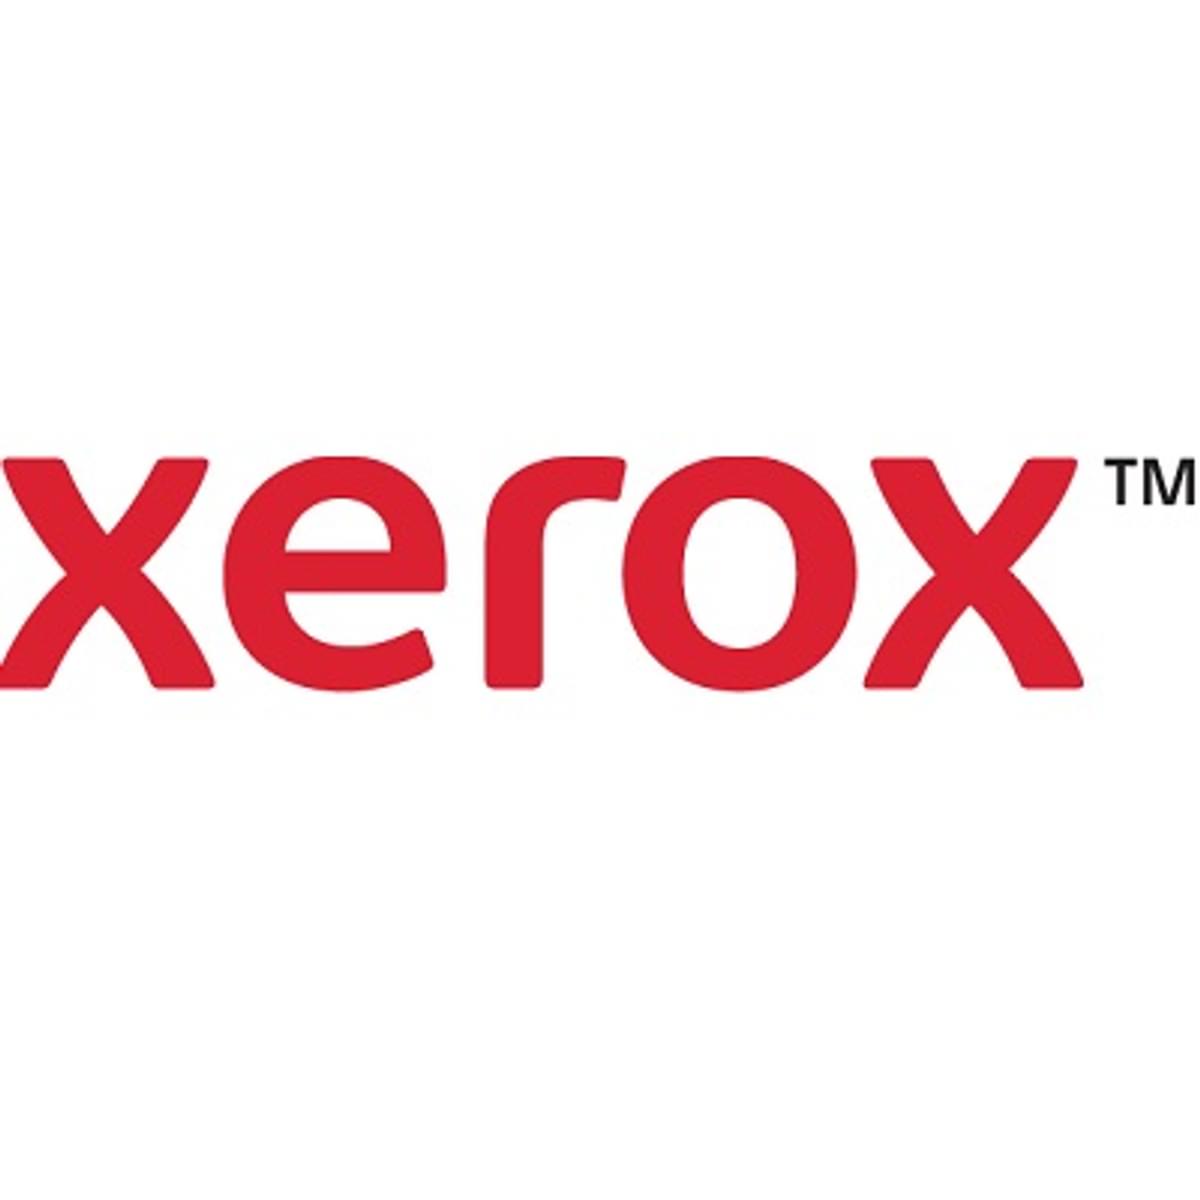 Xerox kondigt oprichting van CareAR softwarebedrijf aan image